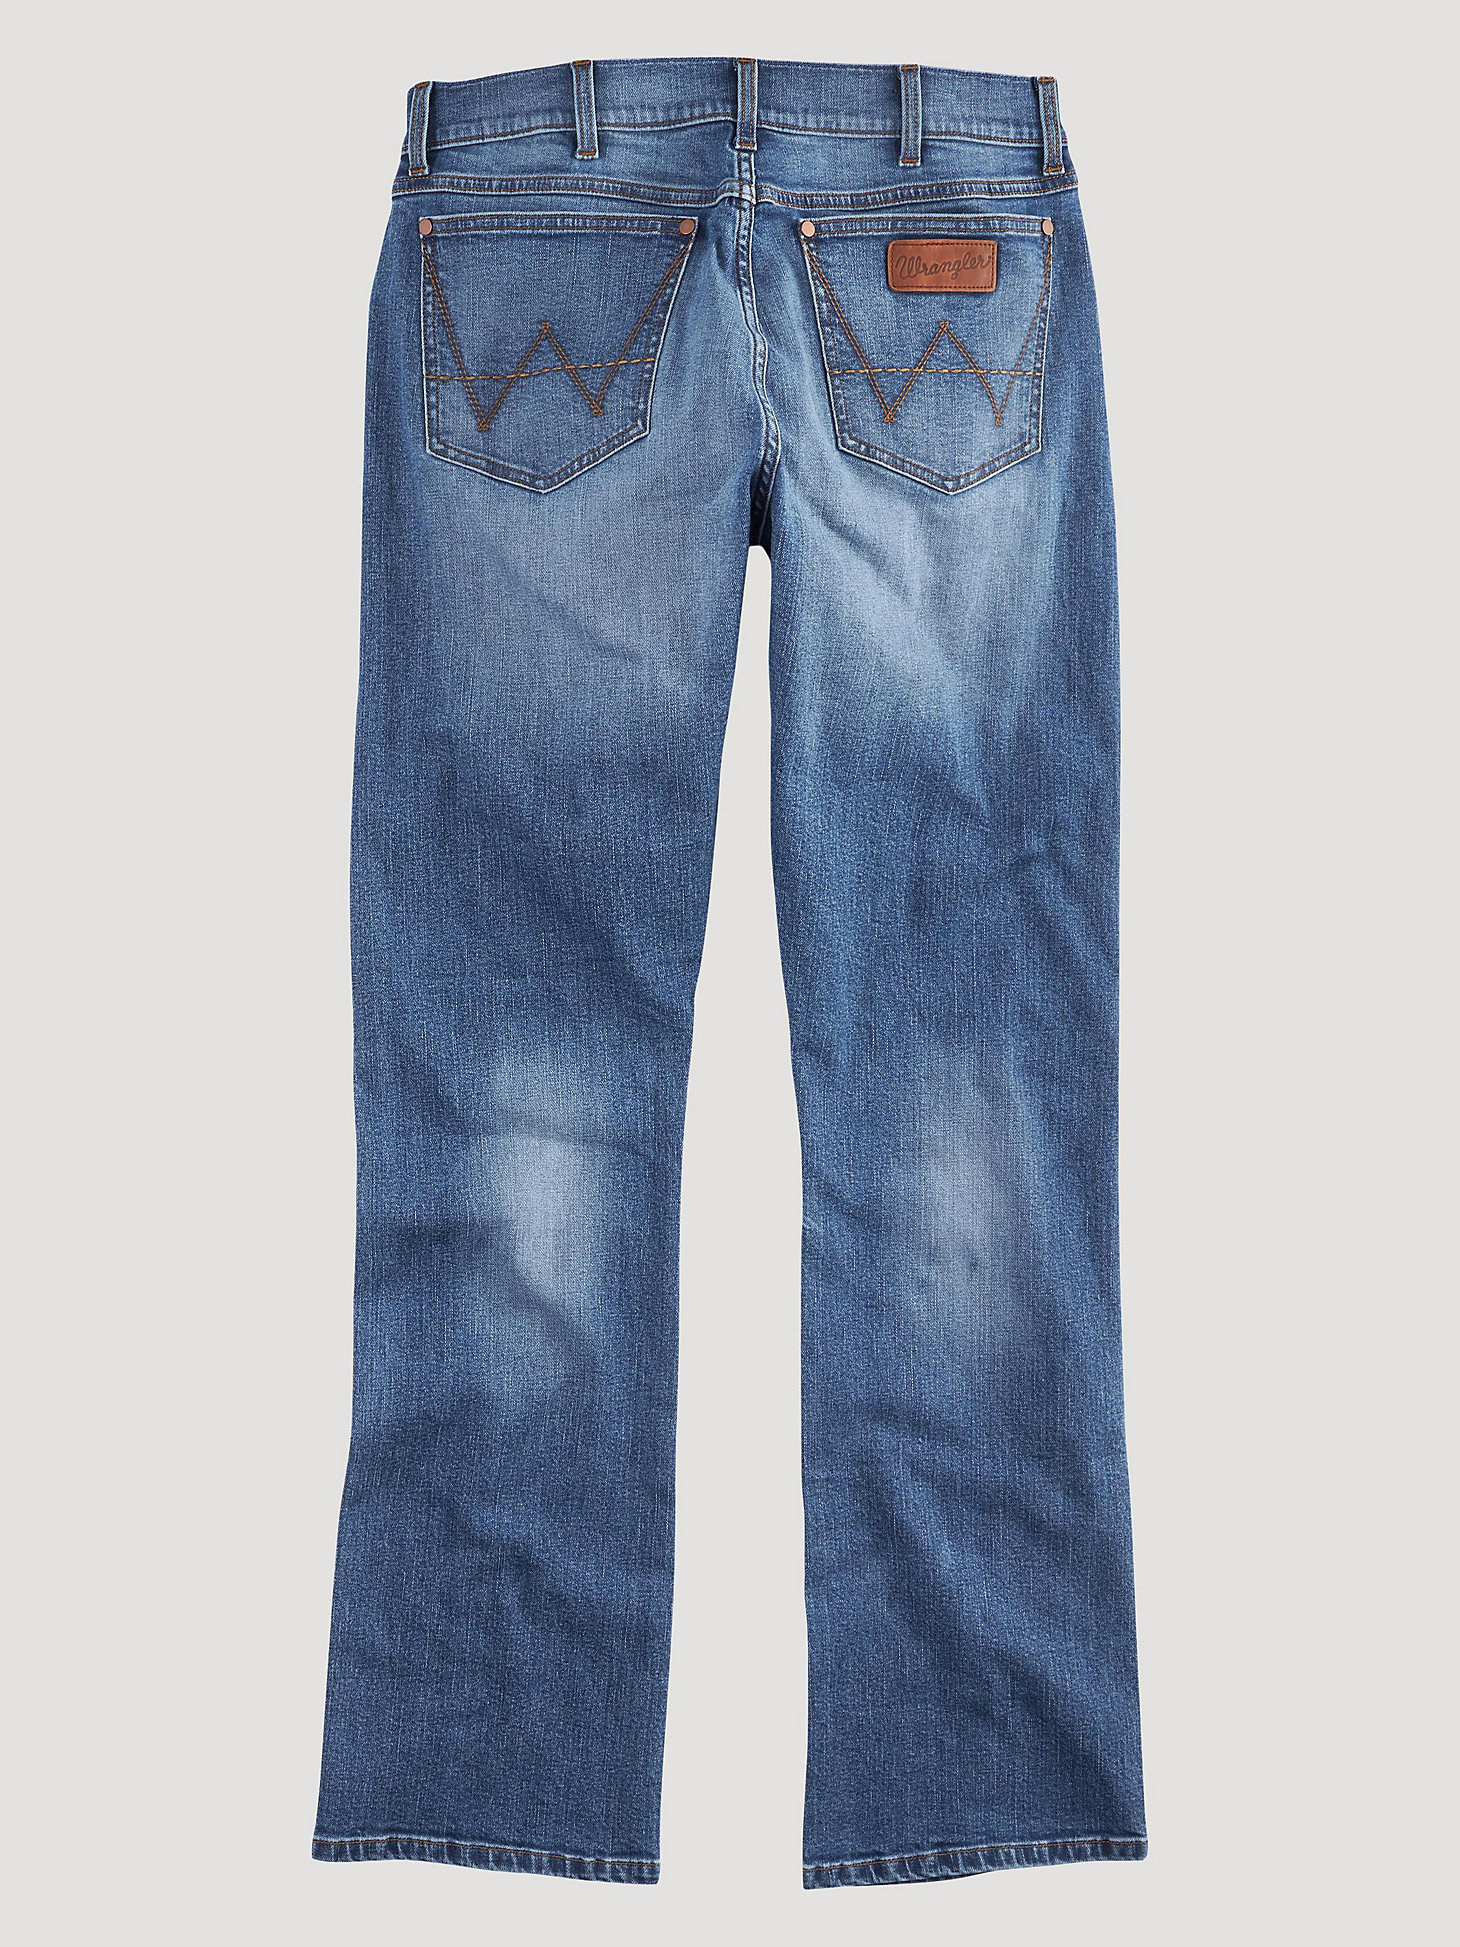 Men's Wrangler Retro® Slim Fit Bootcut Jean in Llano alternative view 5